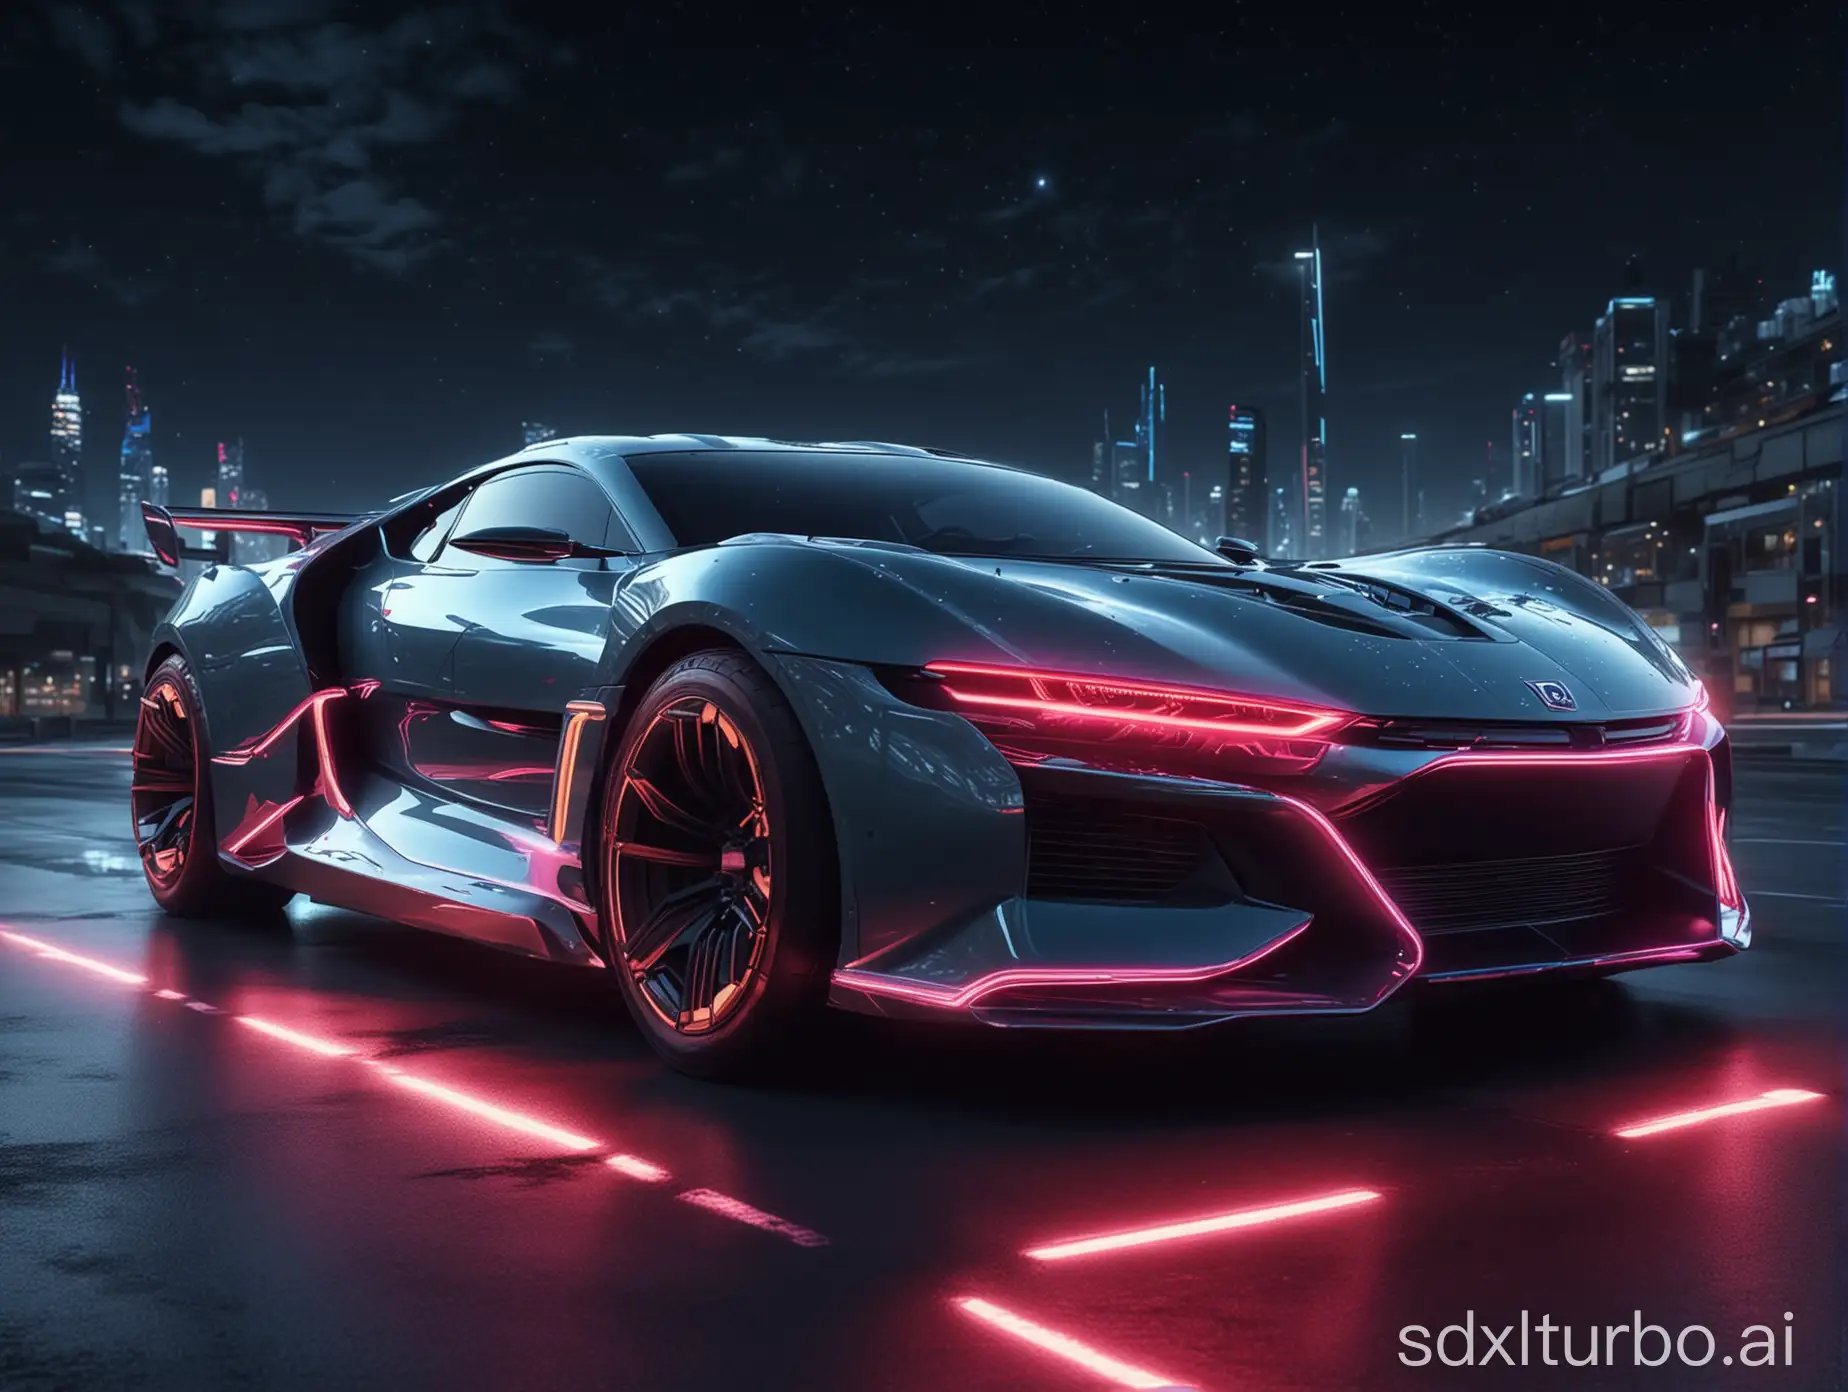 Futuristic-Car-Illuminated-by-Neon-Lights-in-Hyper-Realistic-Night-Scene